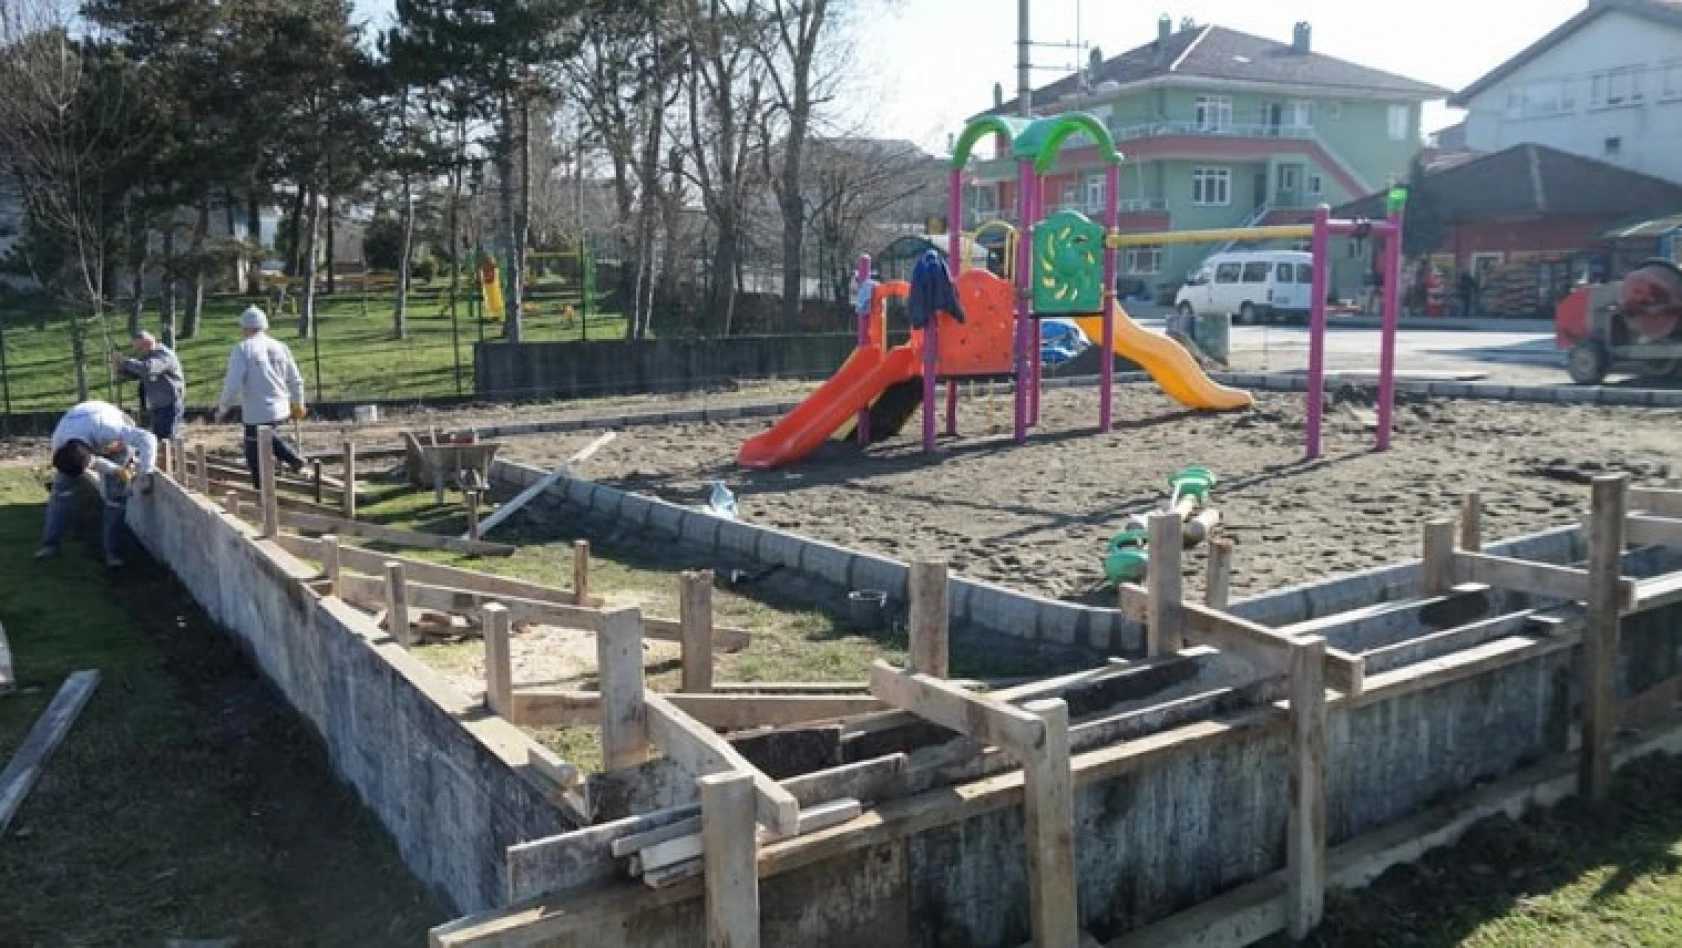 Balamba'daki çocuk oyun parkının yeri değiştiriliyor